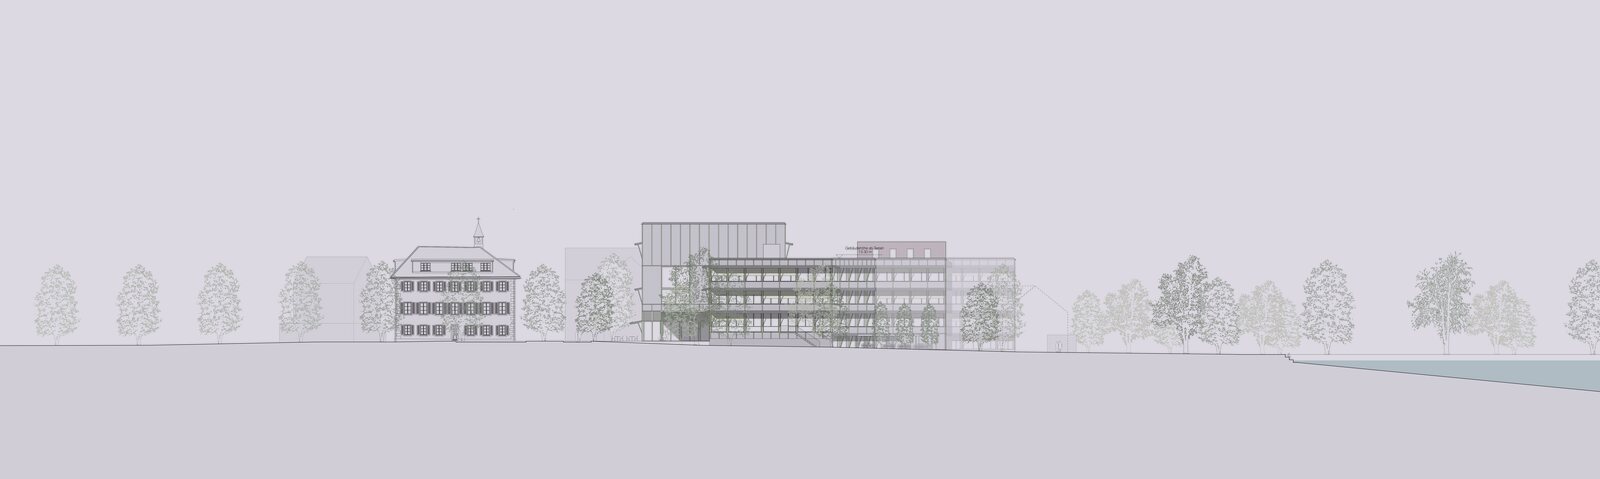 Nuolen - Sanierung und Teilneubau Kantonsschule Ausserschwyz - Schmid Schaerer Architekten Zürich